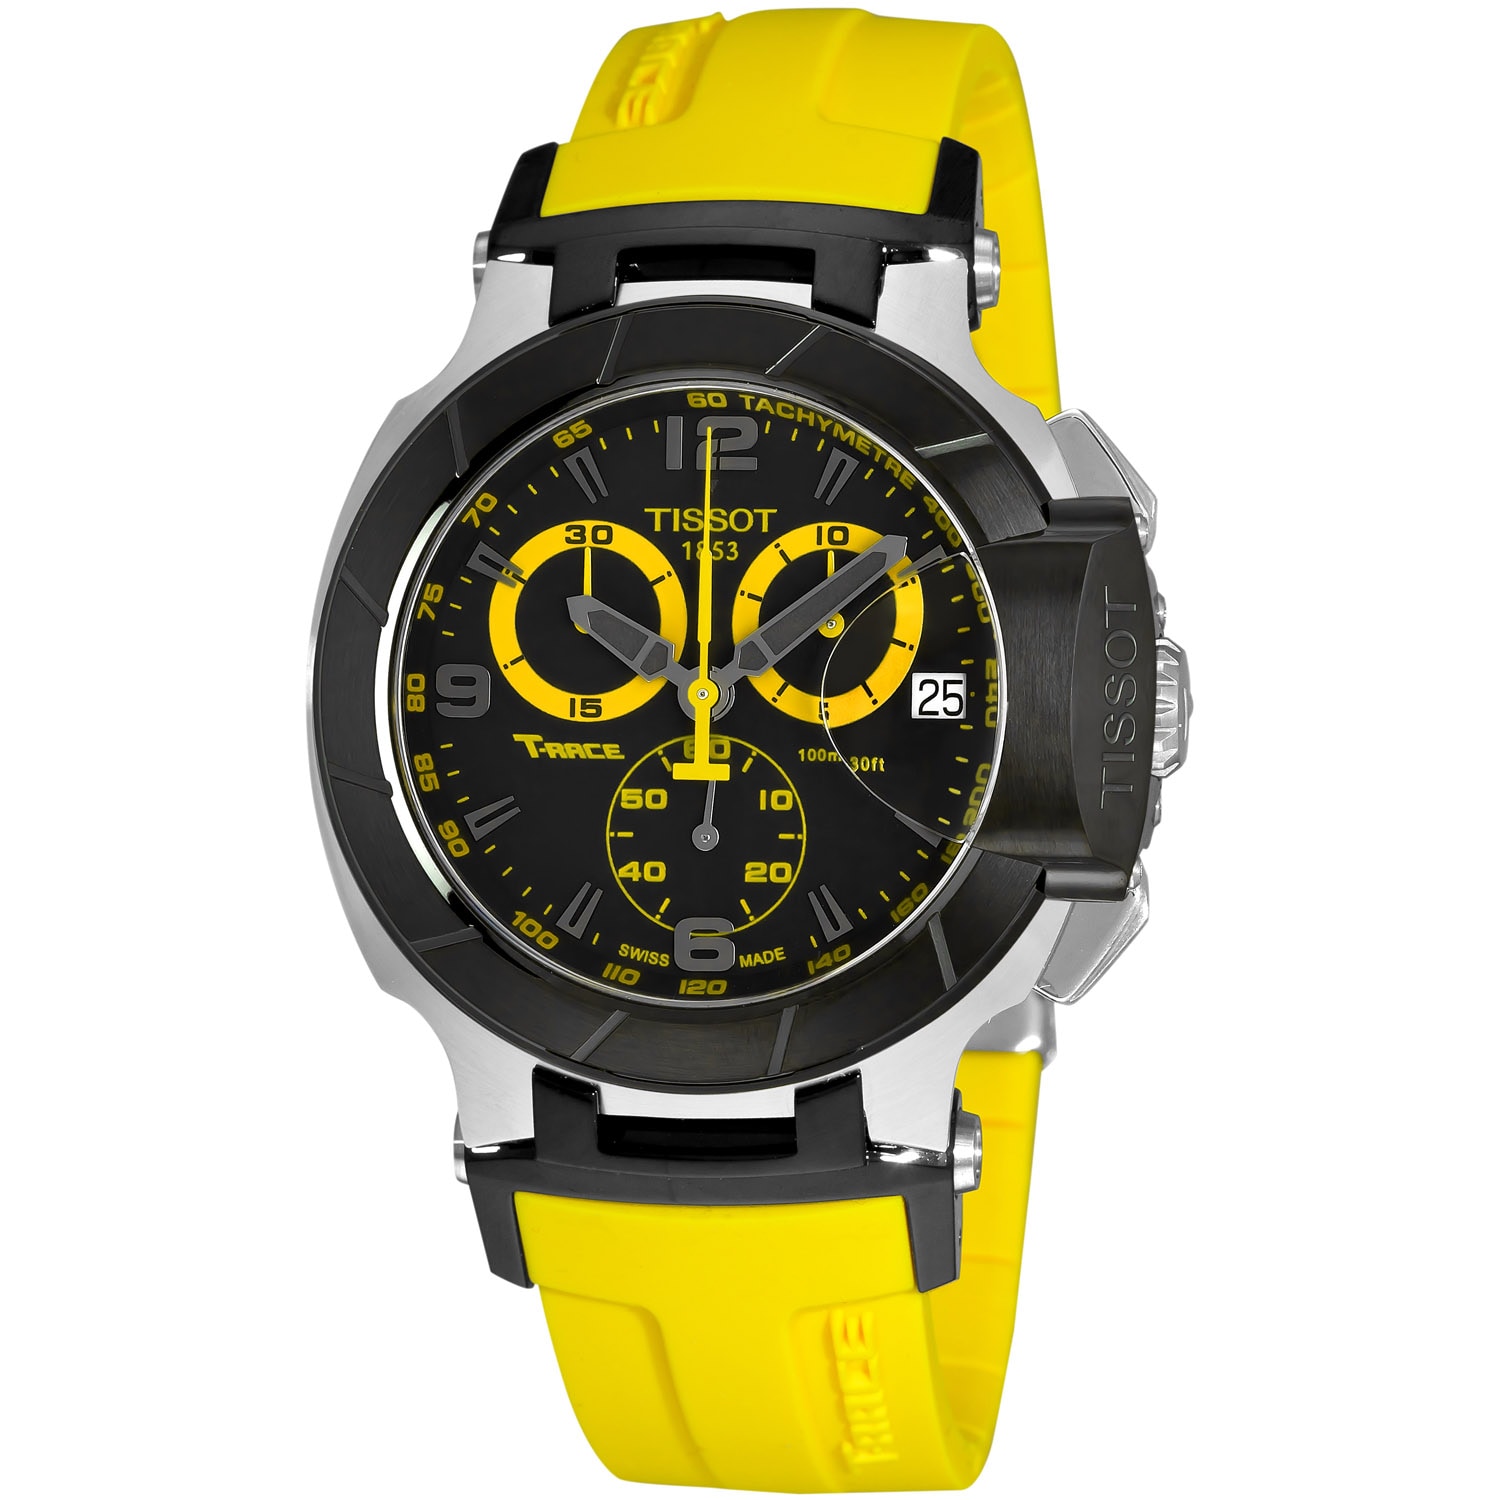 Tissot Men S T Race Black Dial Chronograph Yellow Strap Watch 14121743